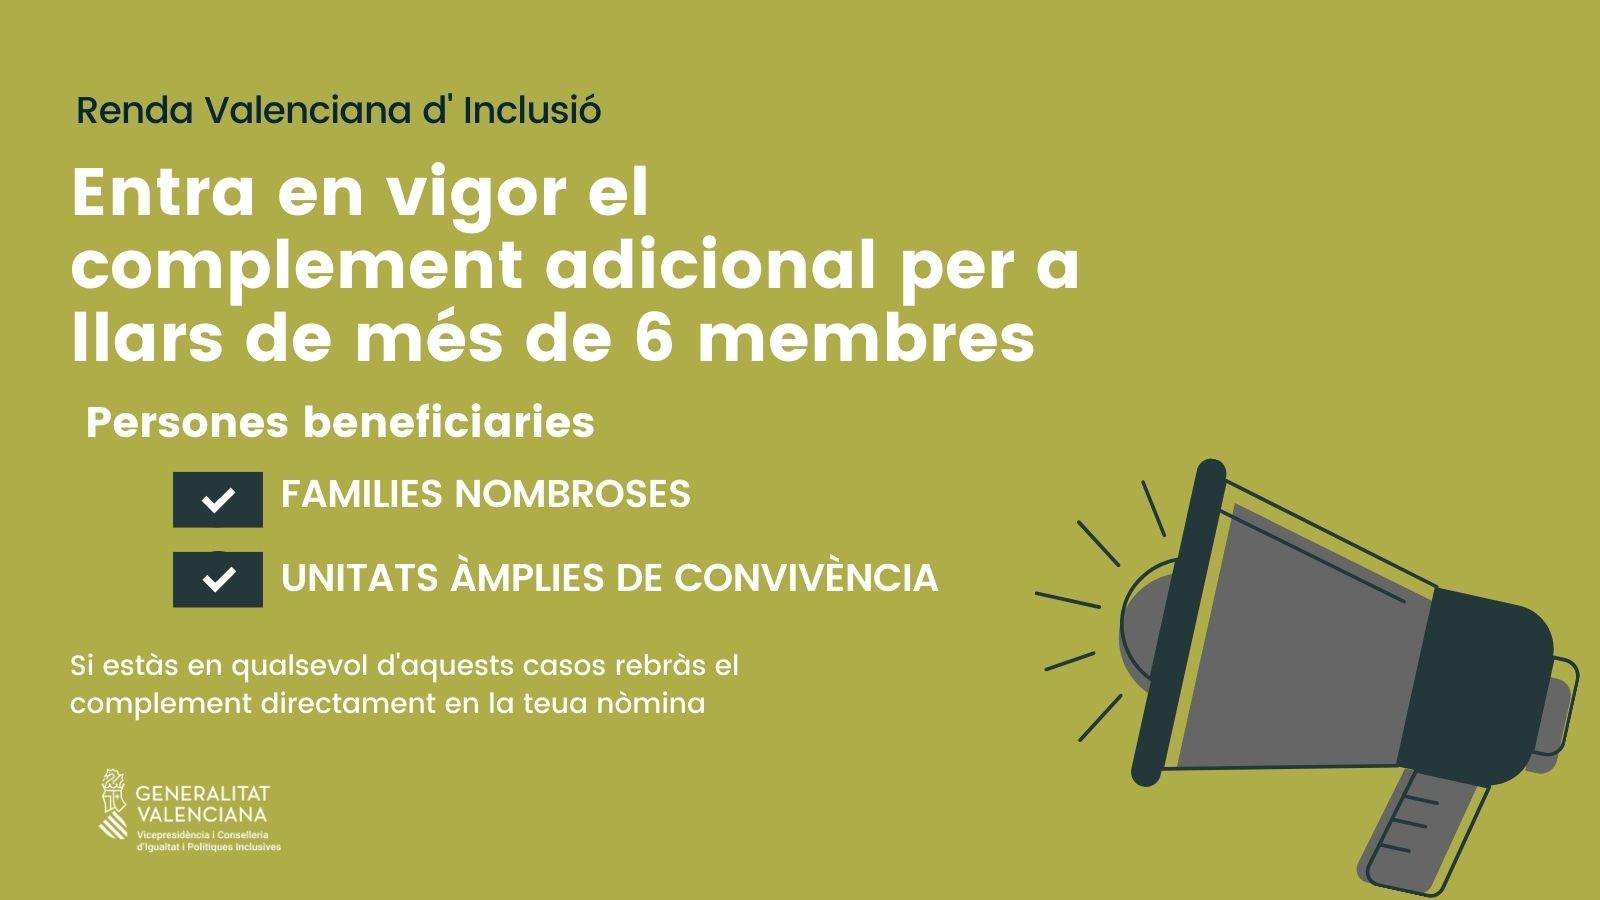 Entra en vigor el complement addicional de la renda valenciana d'inclusió per a les llars de més de sis membres